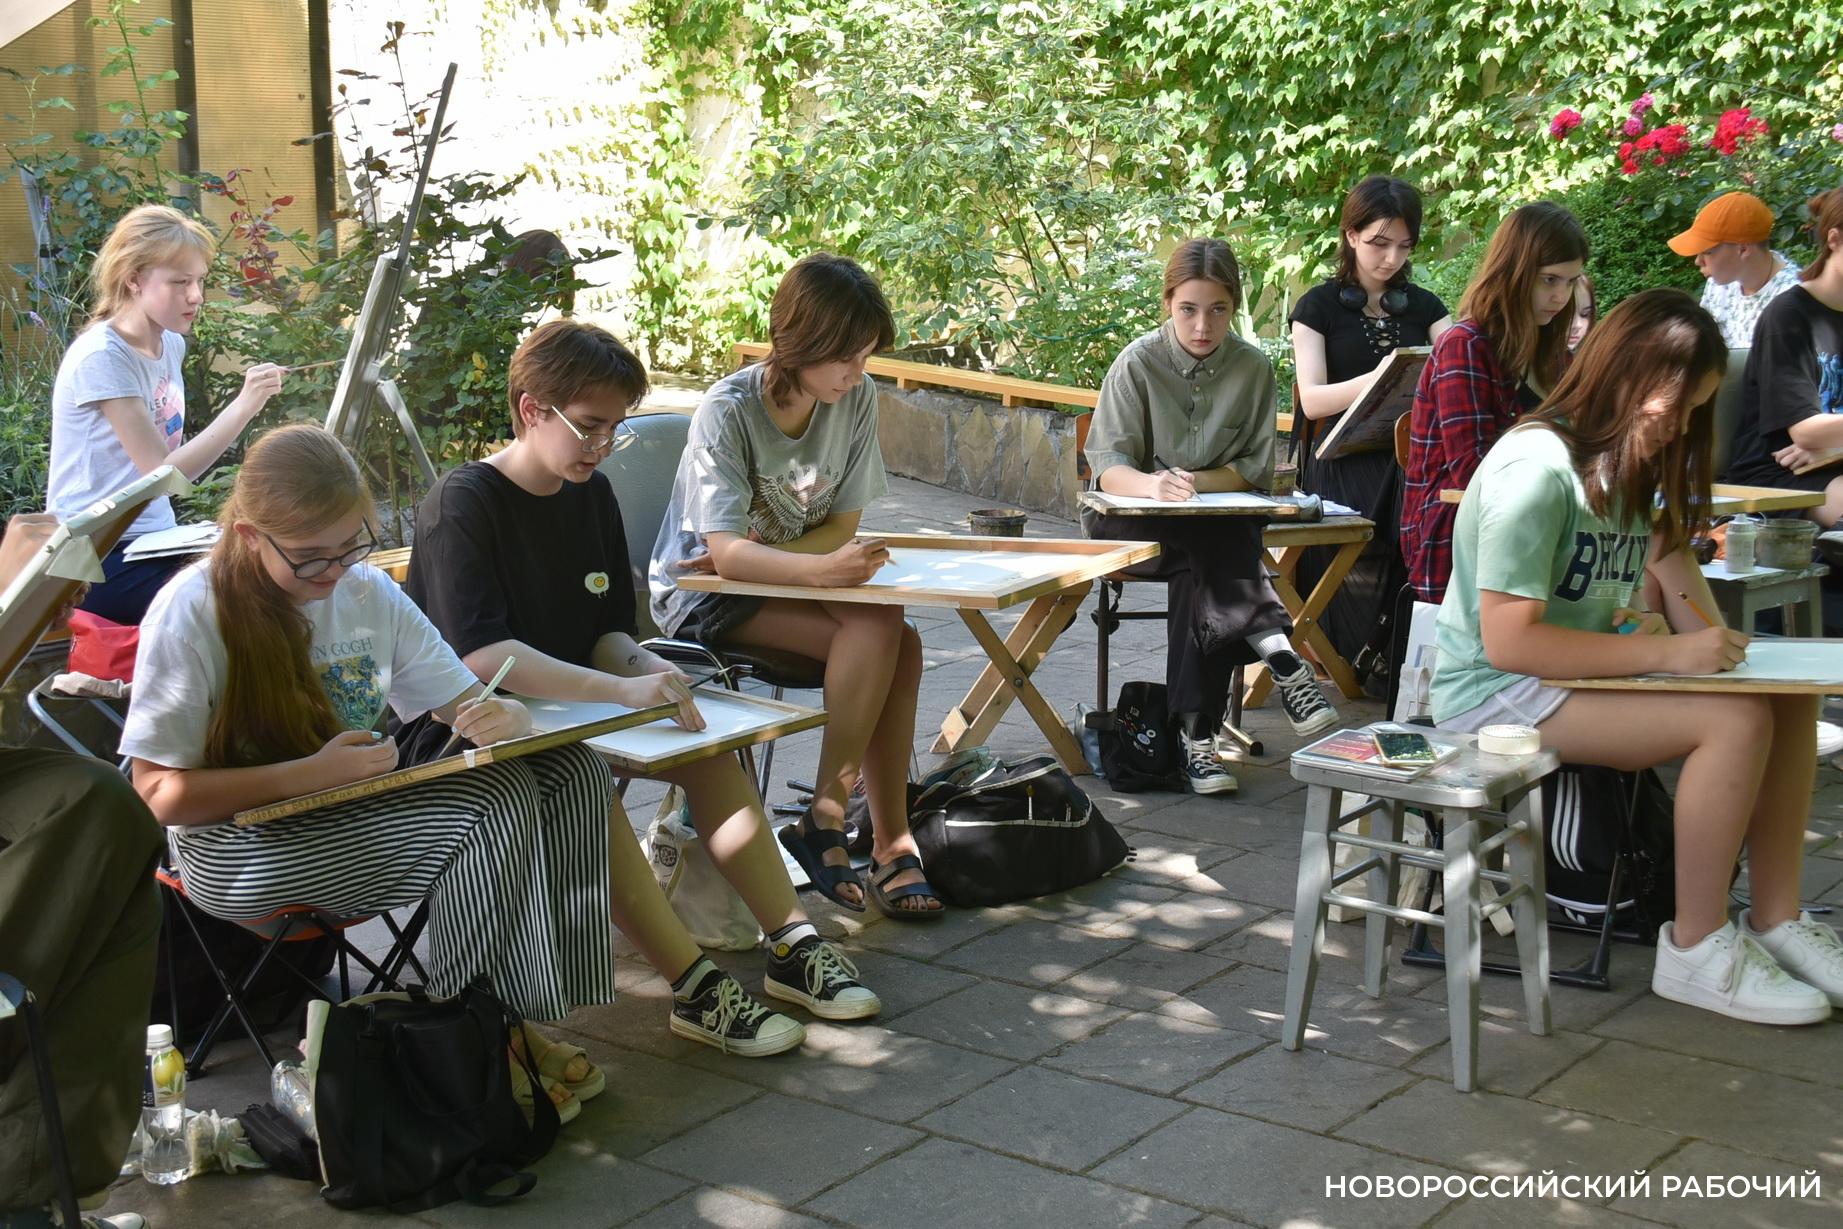 В Новороссийске юные художники собираются на летние пленэры и пишут портреты